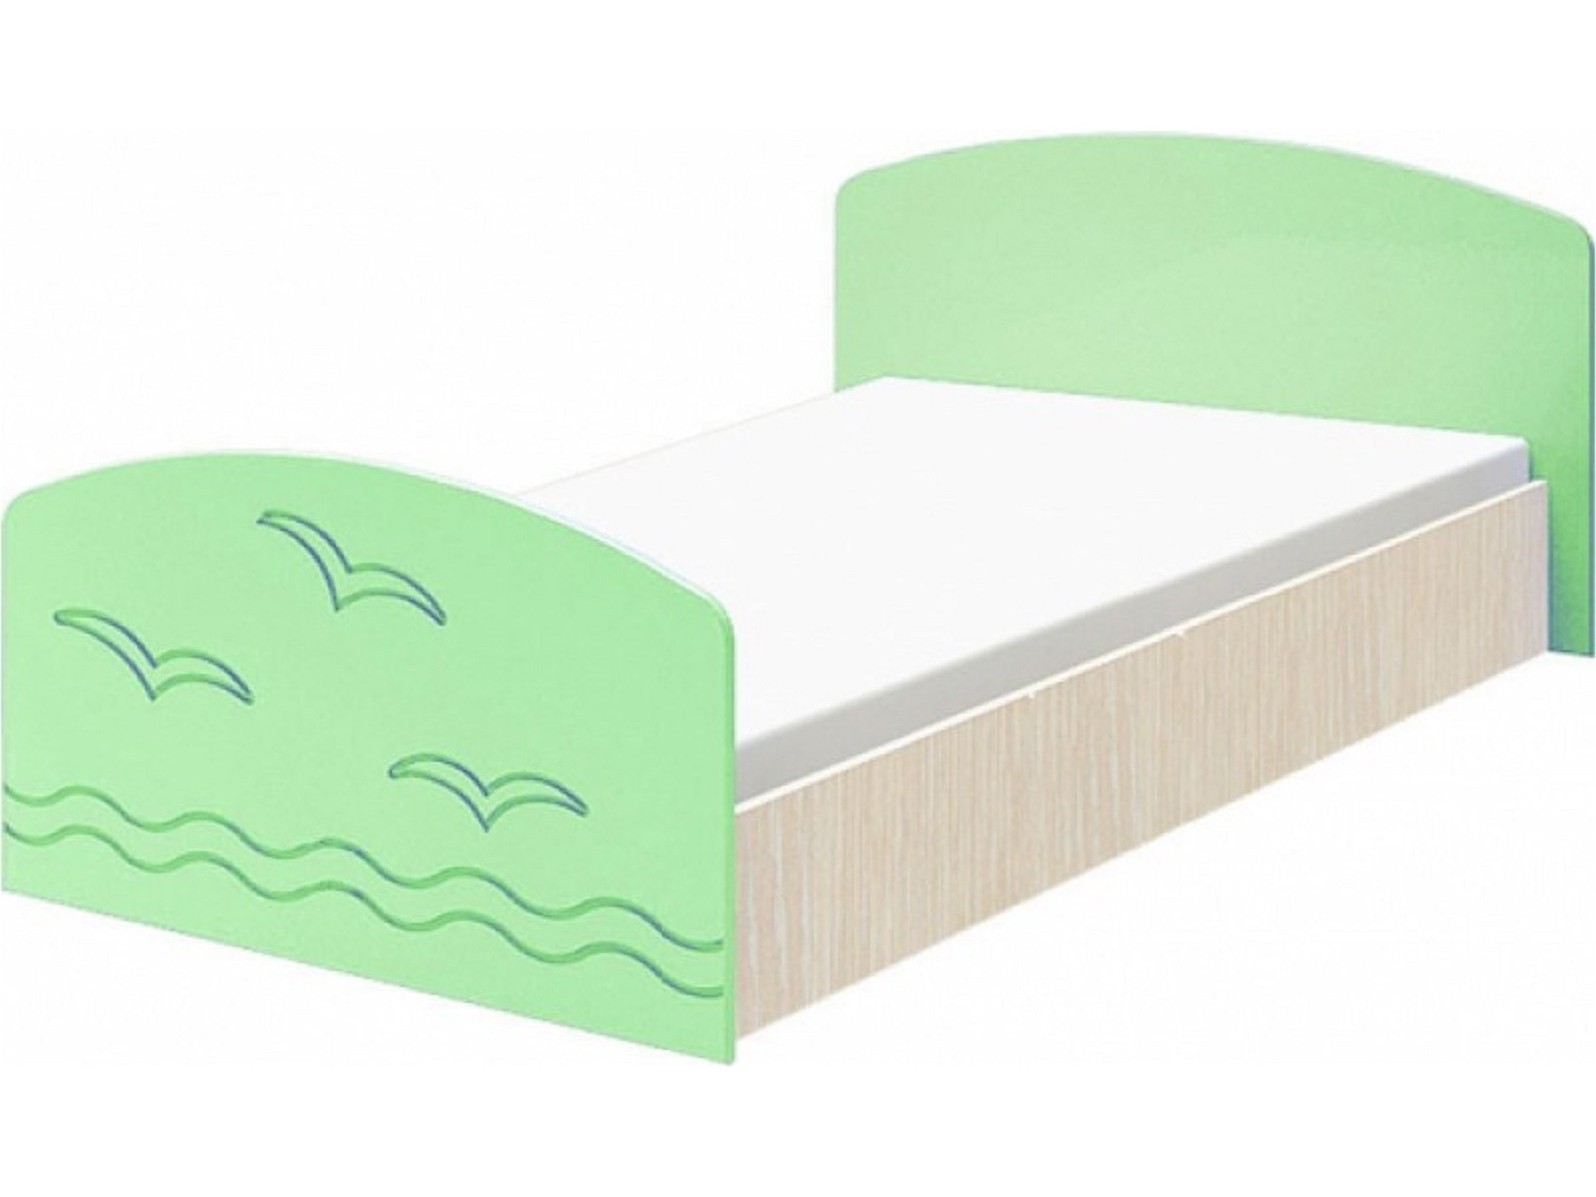 Юниор-2 Детская кровать 80, матовый (Салатовый, Дуб белёный) Салатовый, МДФ, ЛДСП юниор 2 комод матовый салатовый дуб белёный зеленый мдф лдсп